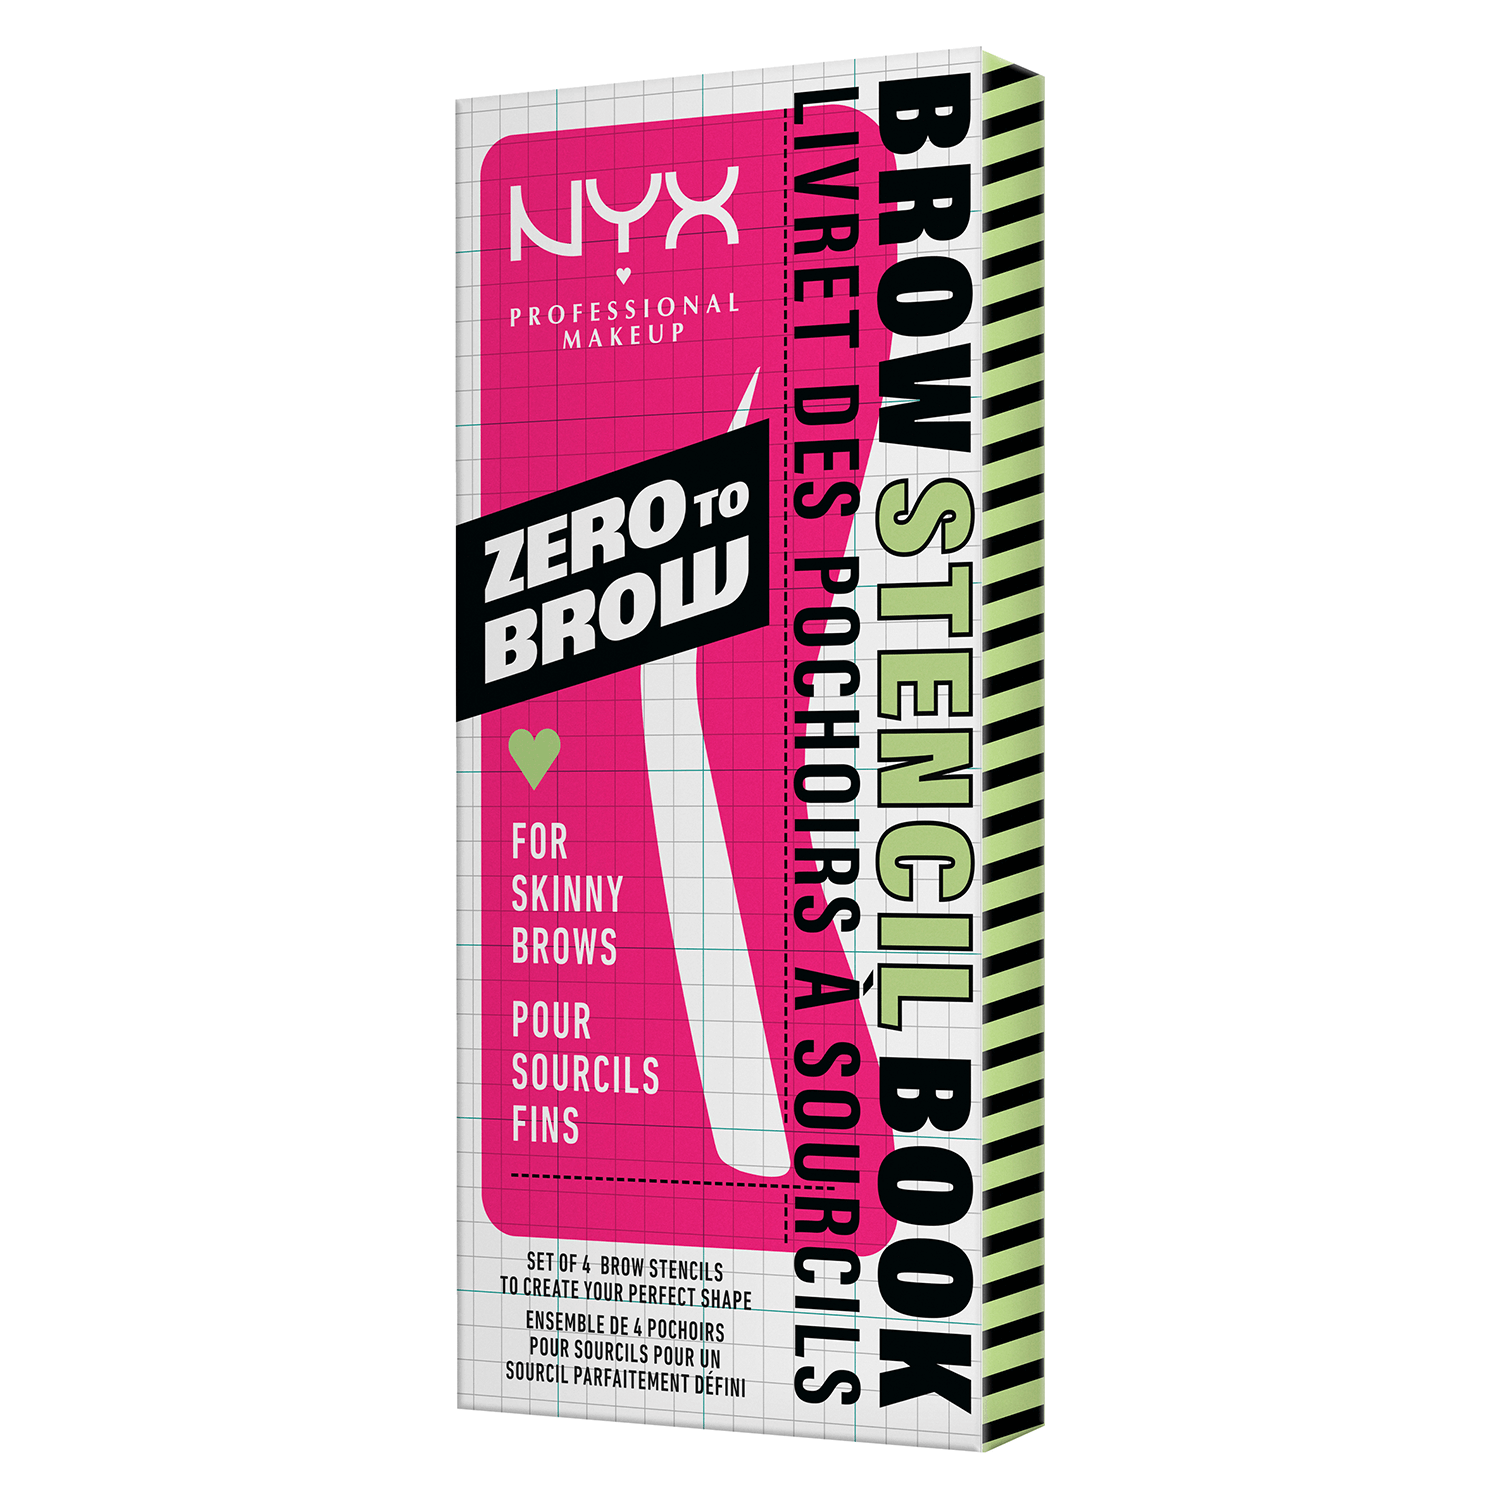 Produktbild von NYX Brows - Zero To Brow Stencil Thin Brow